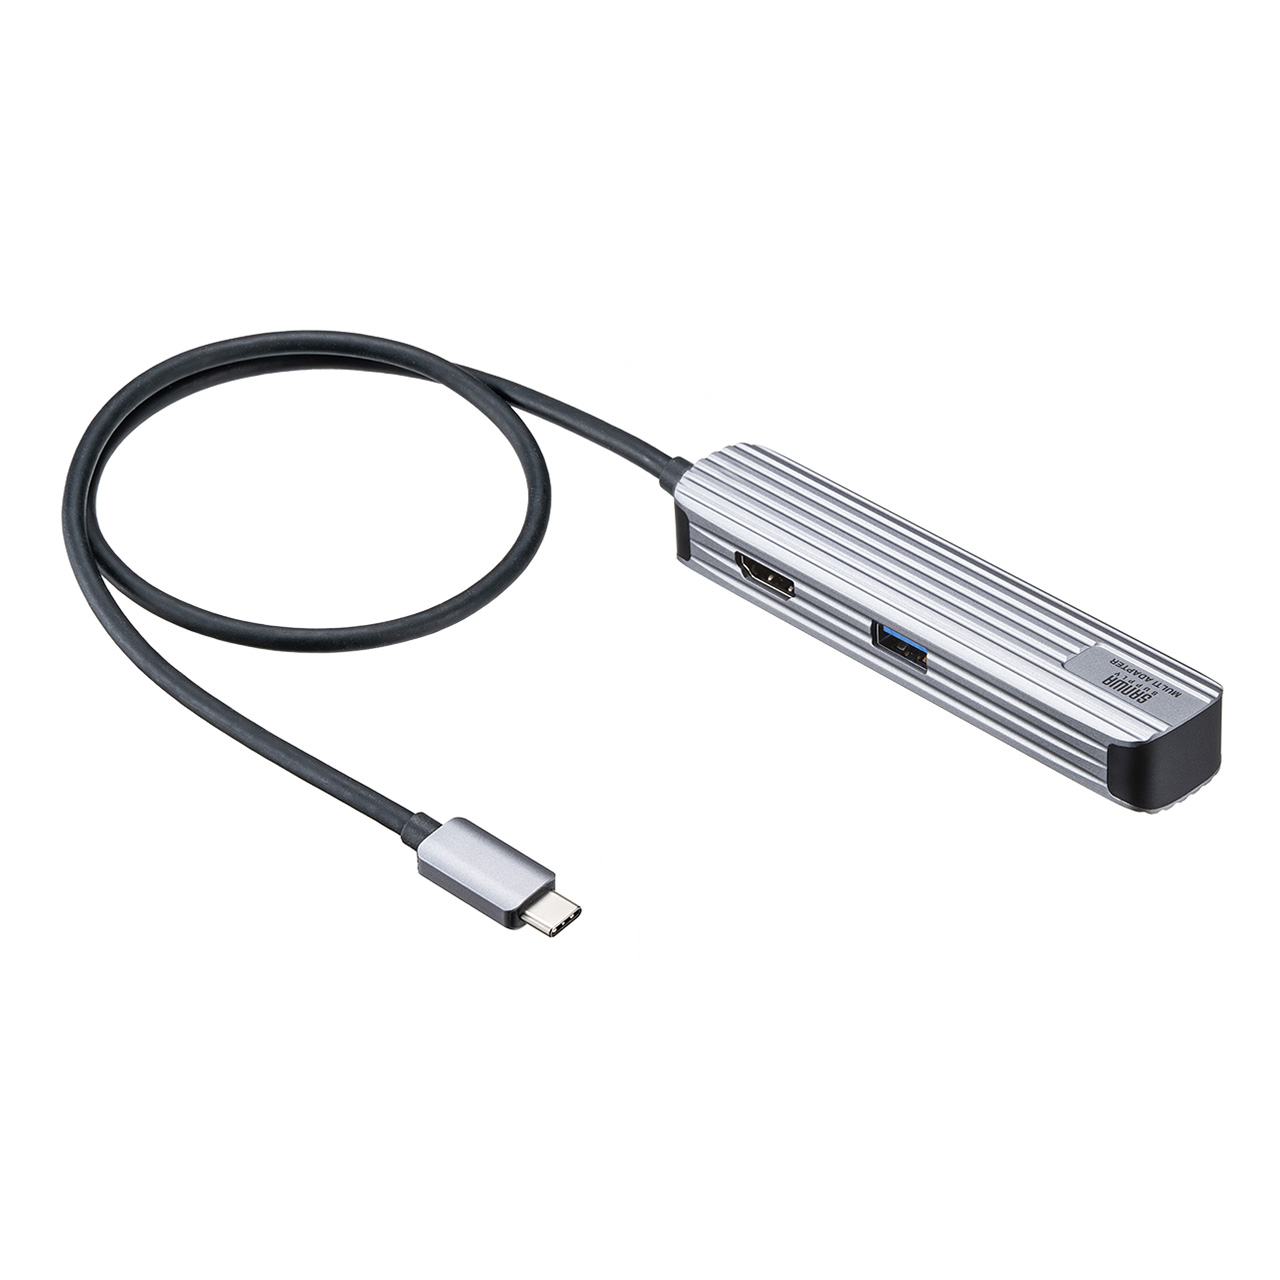 【ビジネス応援セール】USBハブ HDMI出力対応 小型 ドッキングステーション カードリーダー アルミ素材 ケーブル長50cm 400-HUBC10GM